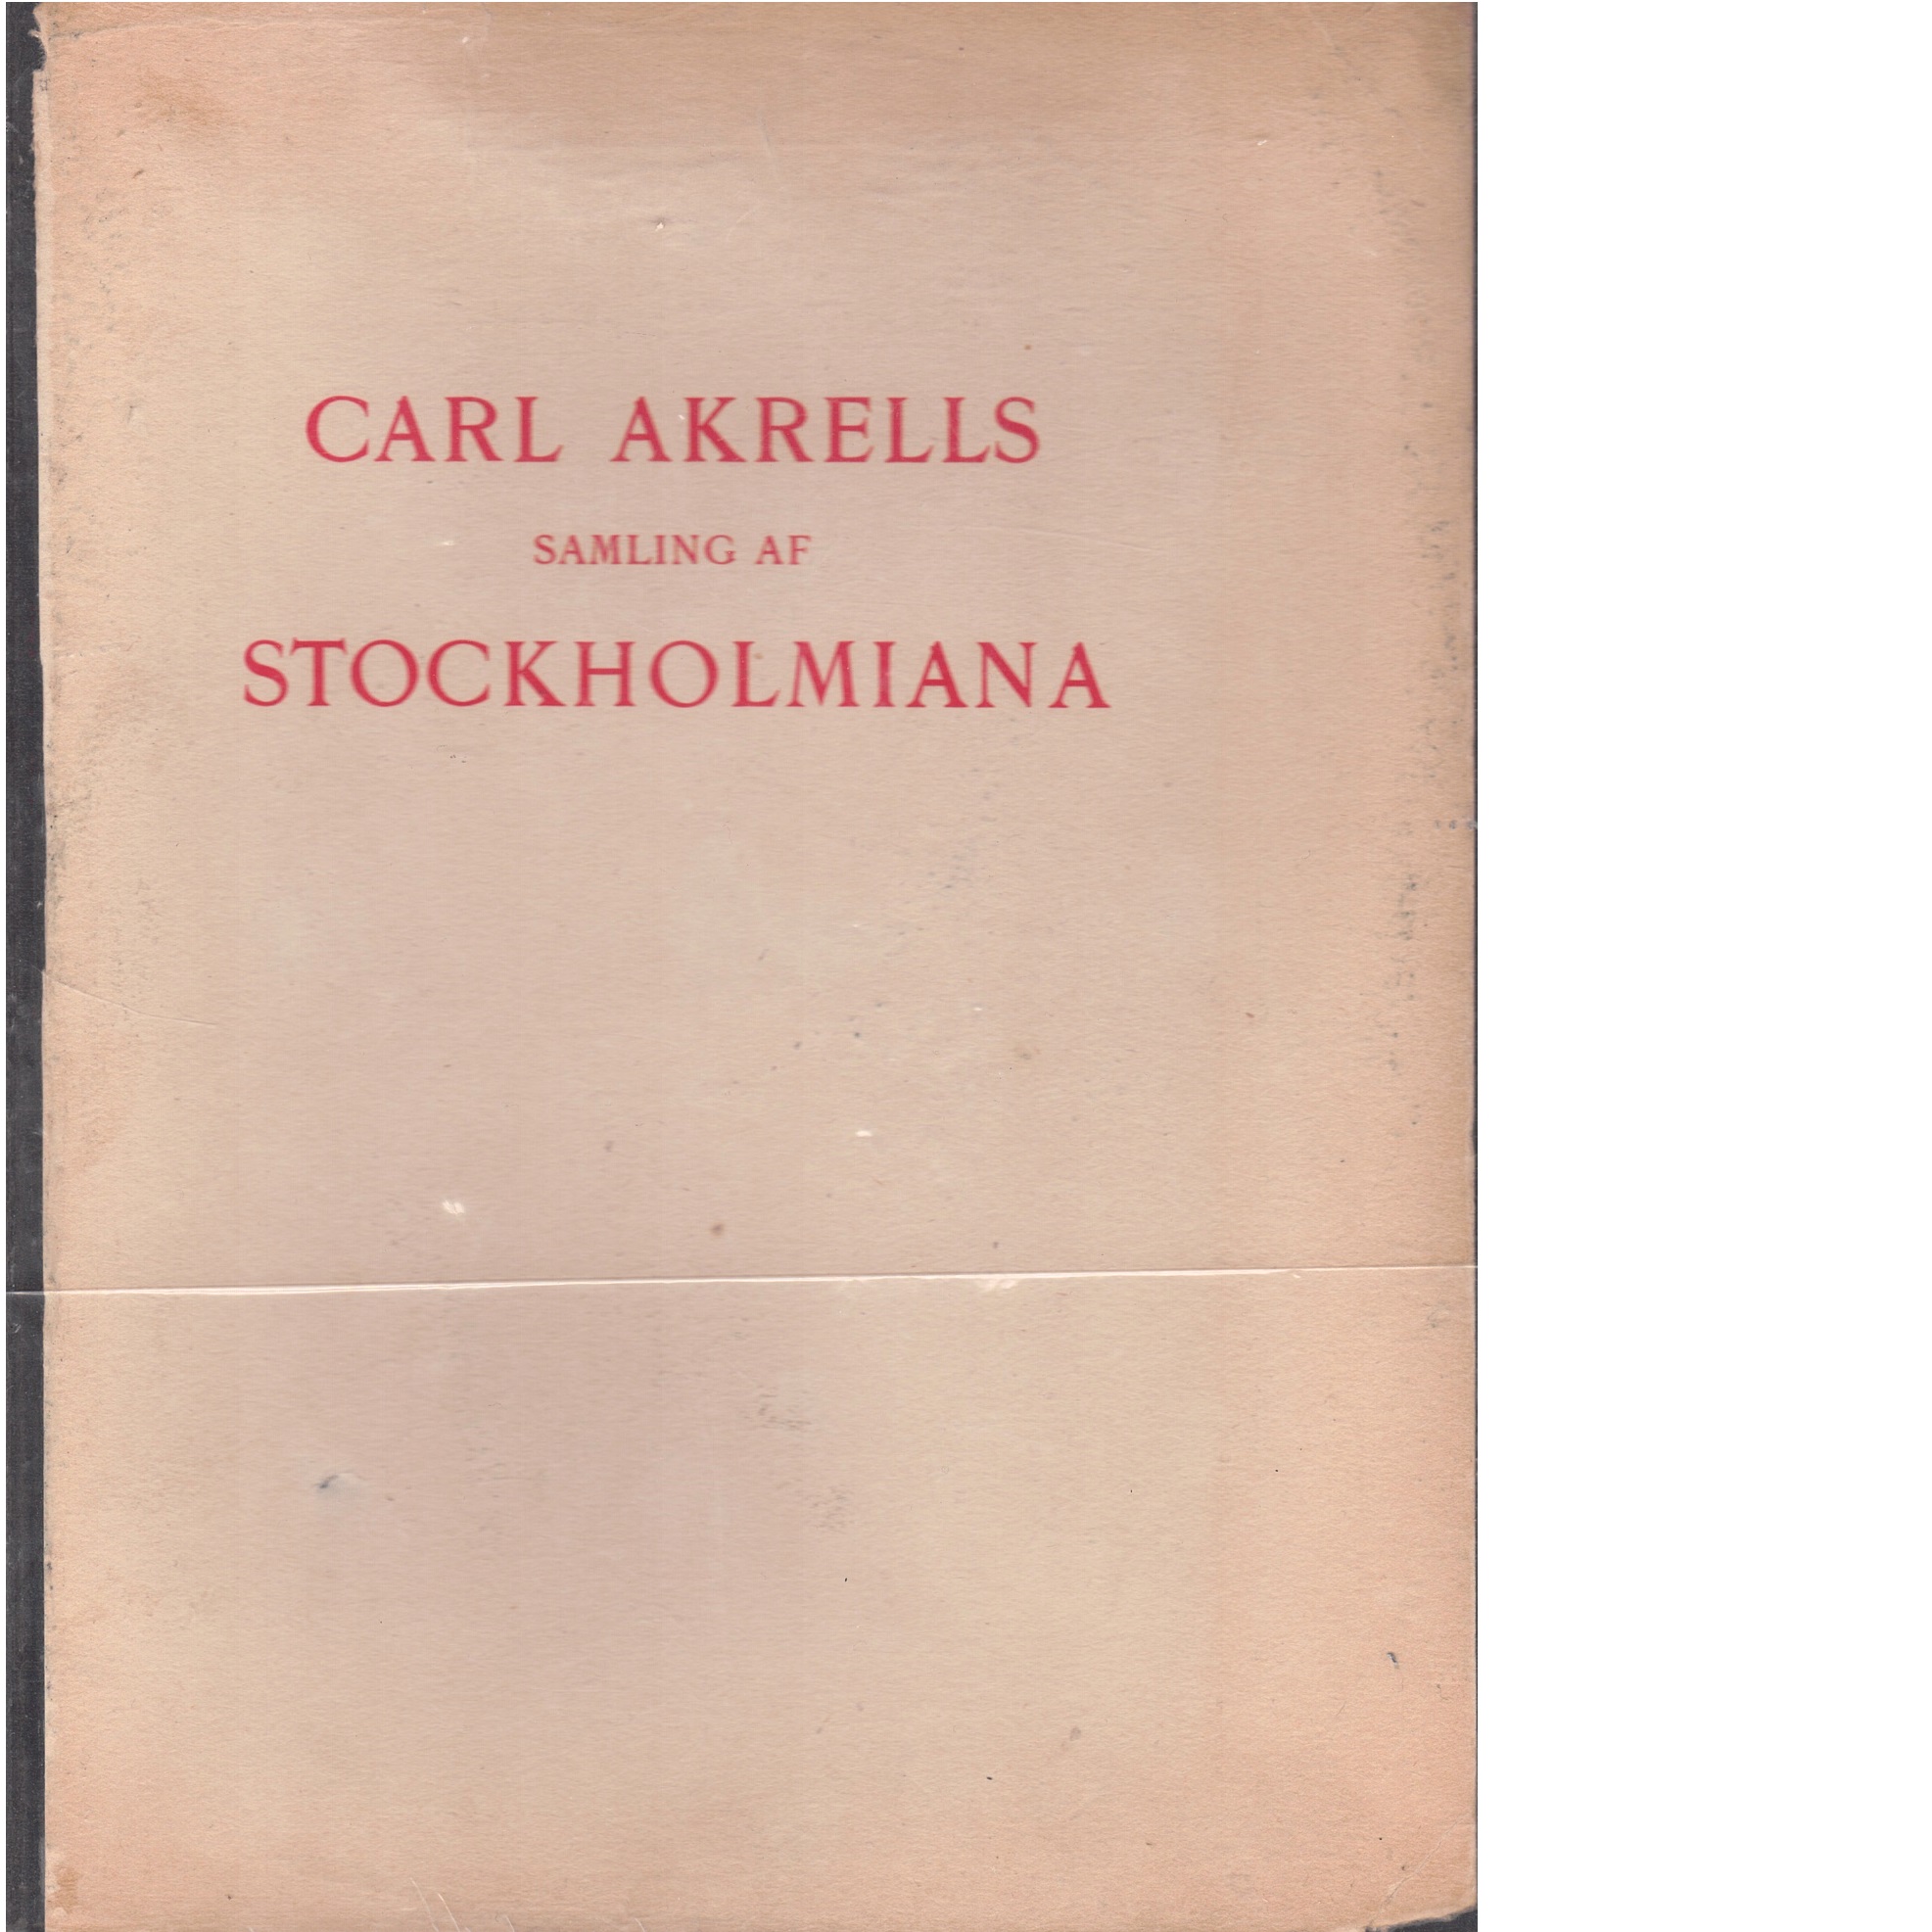 Carl Akrells samling af Stockholmiana - Östman, Nils